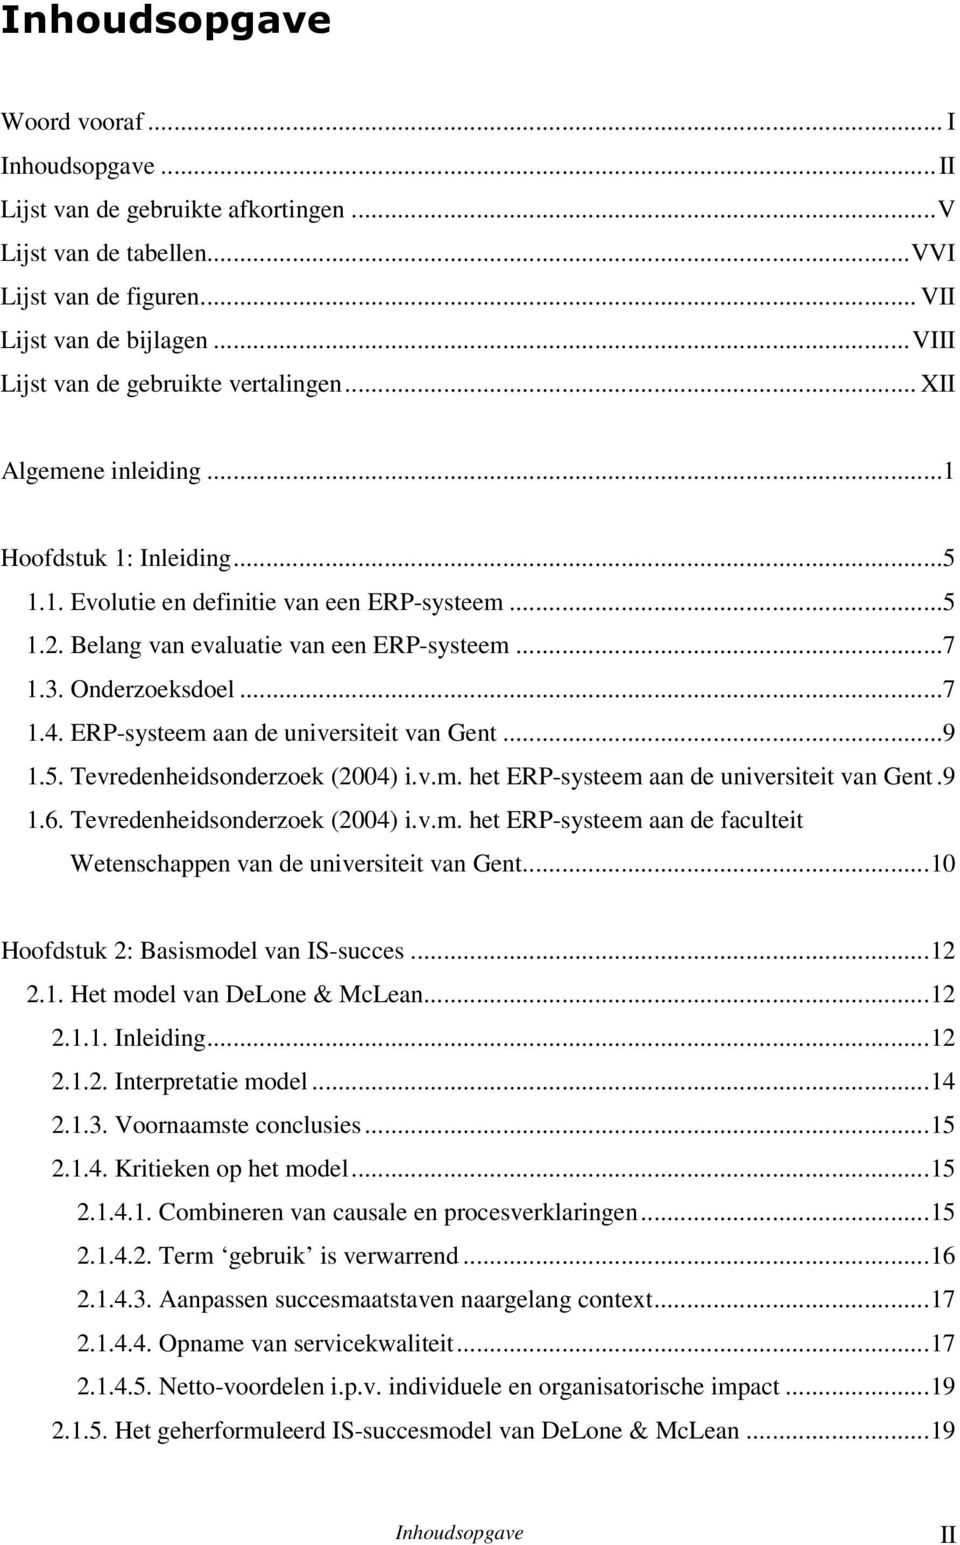 3. Onderzoeksdoel...7 1.4. ERP-systeem aan de universiteit van Gent...9 1.5. Tevredenheidsonderzoek (2004) i.v.m. het ERP-systeem aan de universiteit van Gent.9 1.6. Tevredenheidsonderzoek (2004) i.v.m. het ERP-systeem aan de faculteit Wetenschappen van de universiteit van Gent.